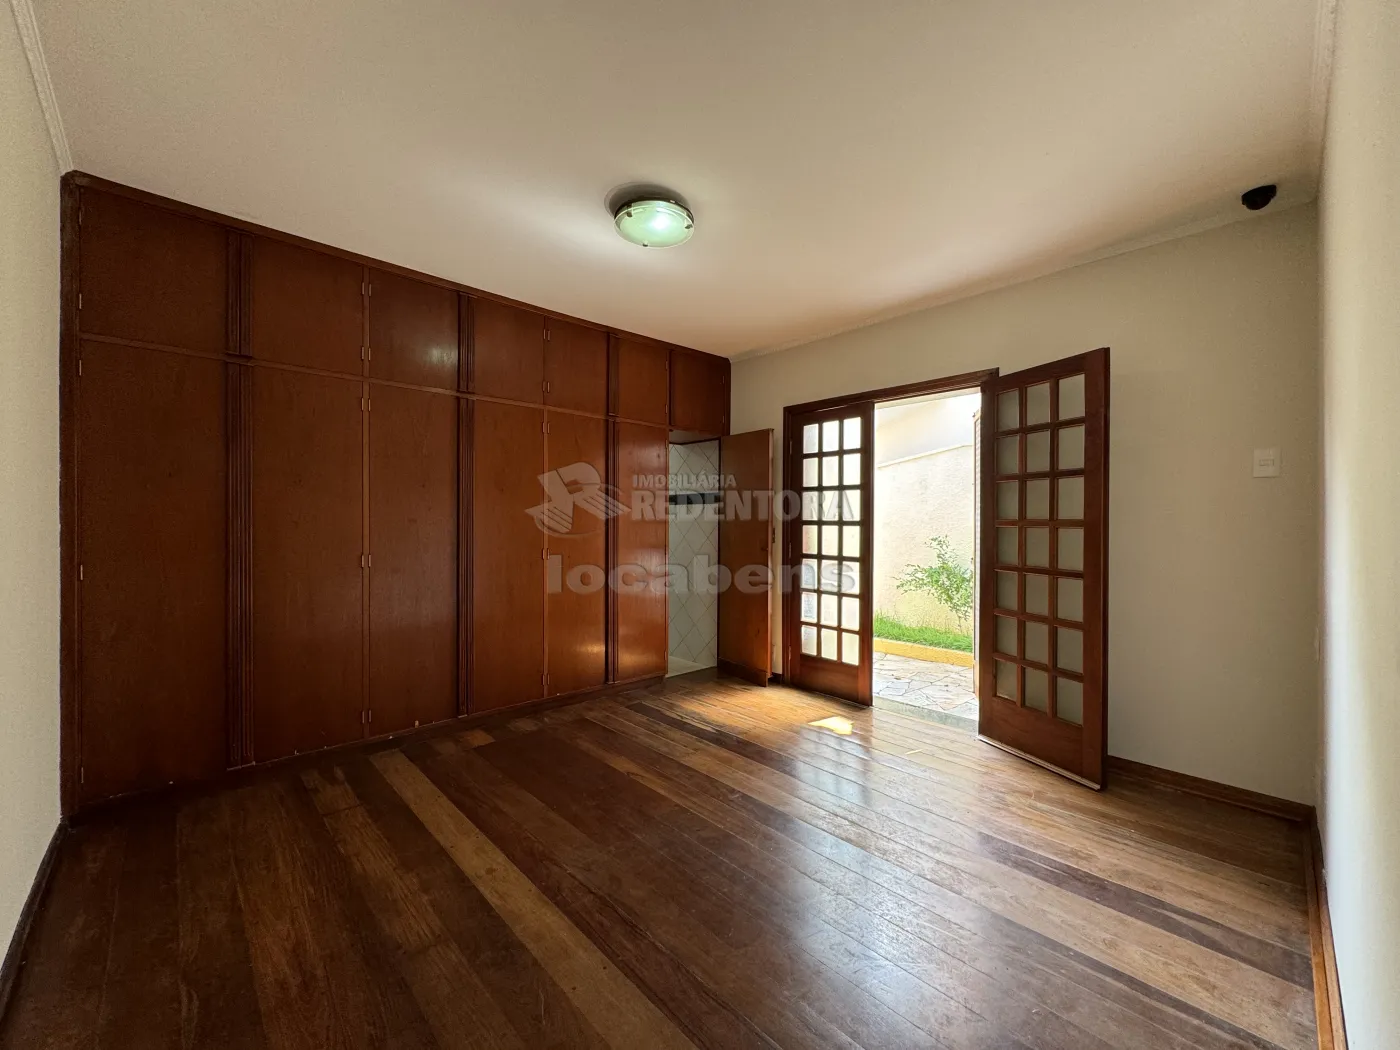 Alugar Casa / Condomínio em São José do Rio Preto apenas R$ 6.000,00 - Foto 9